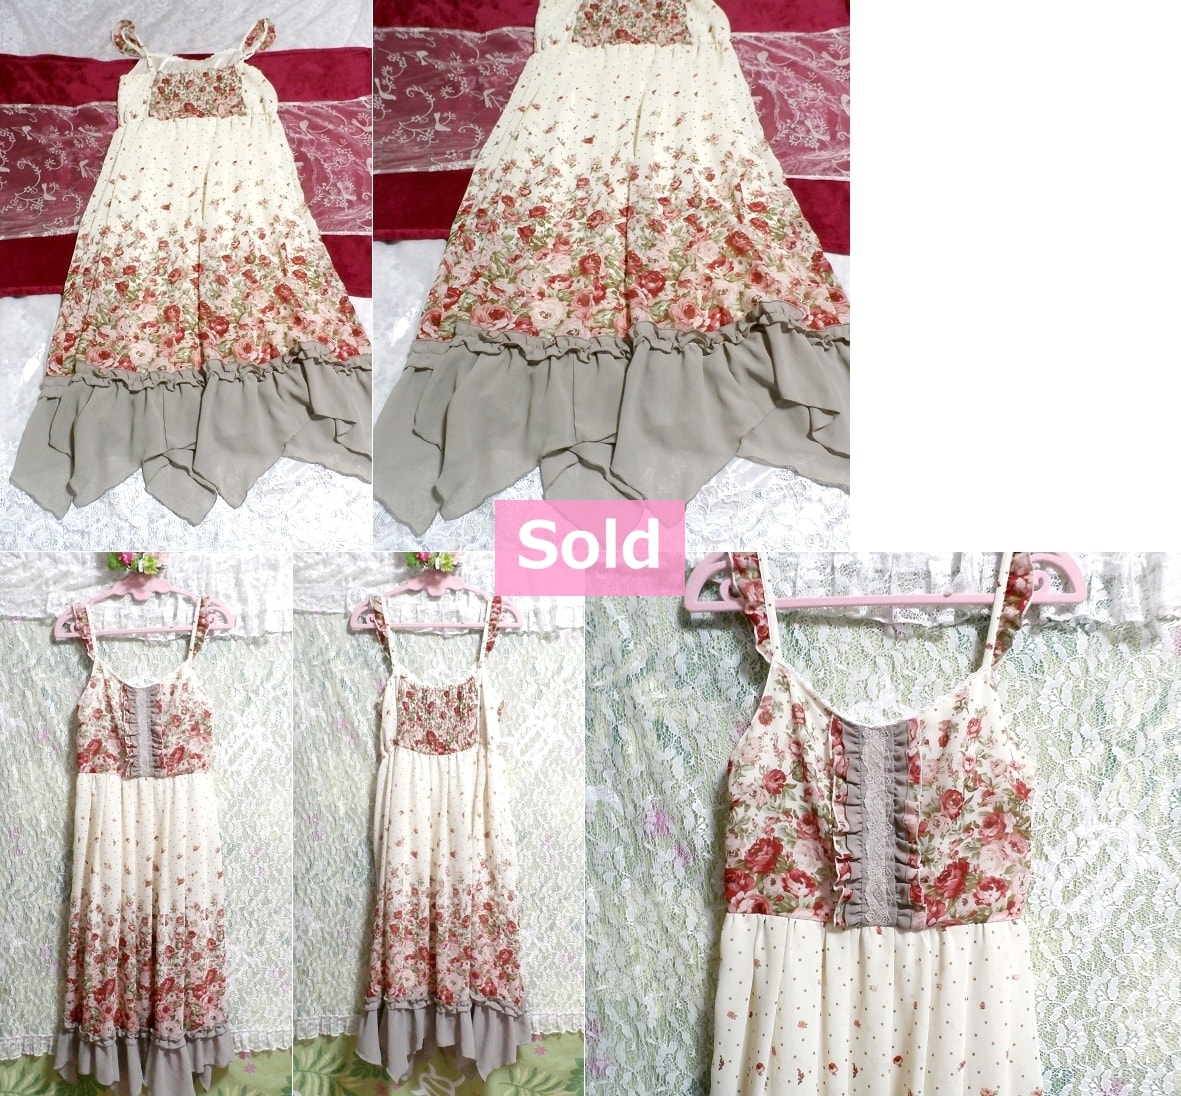 White chiffon ruffle camisole flower pattern maxi onepiece dress